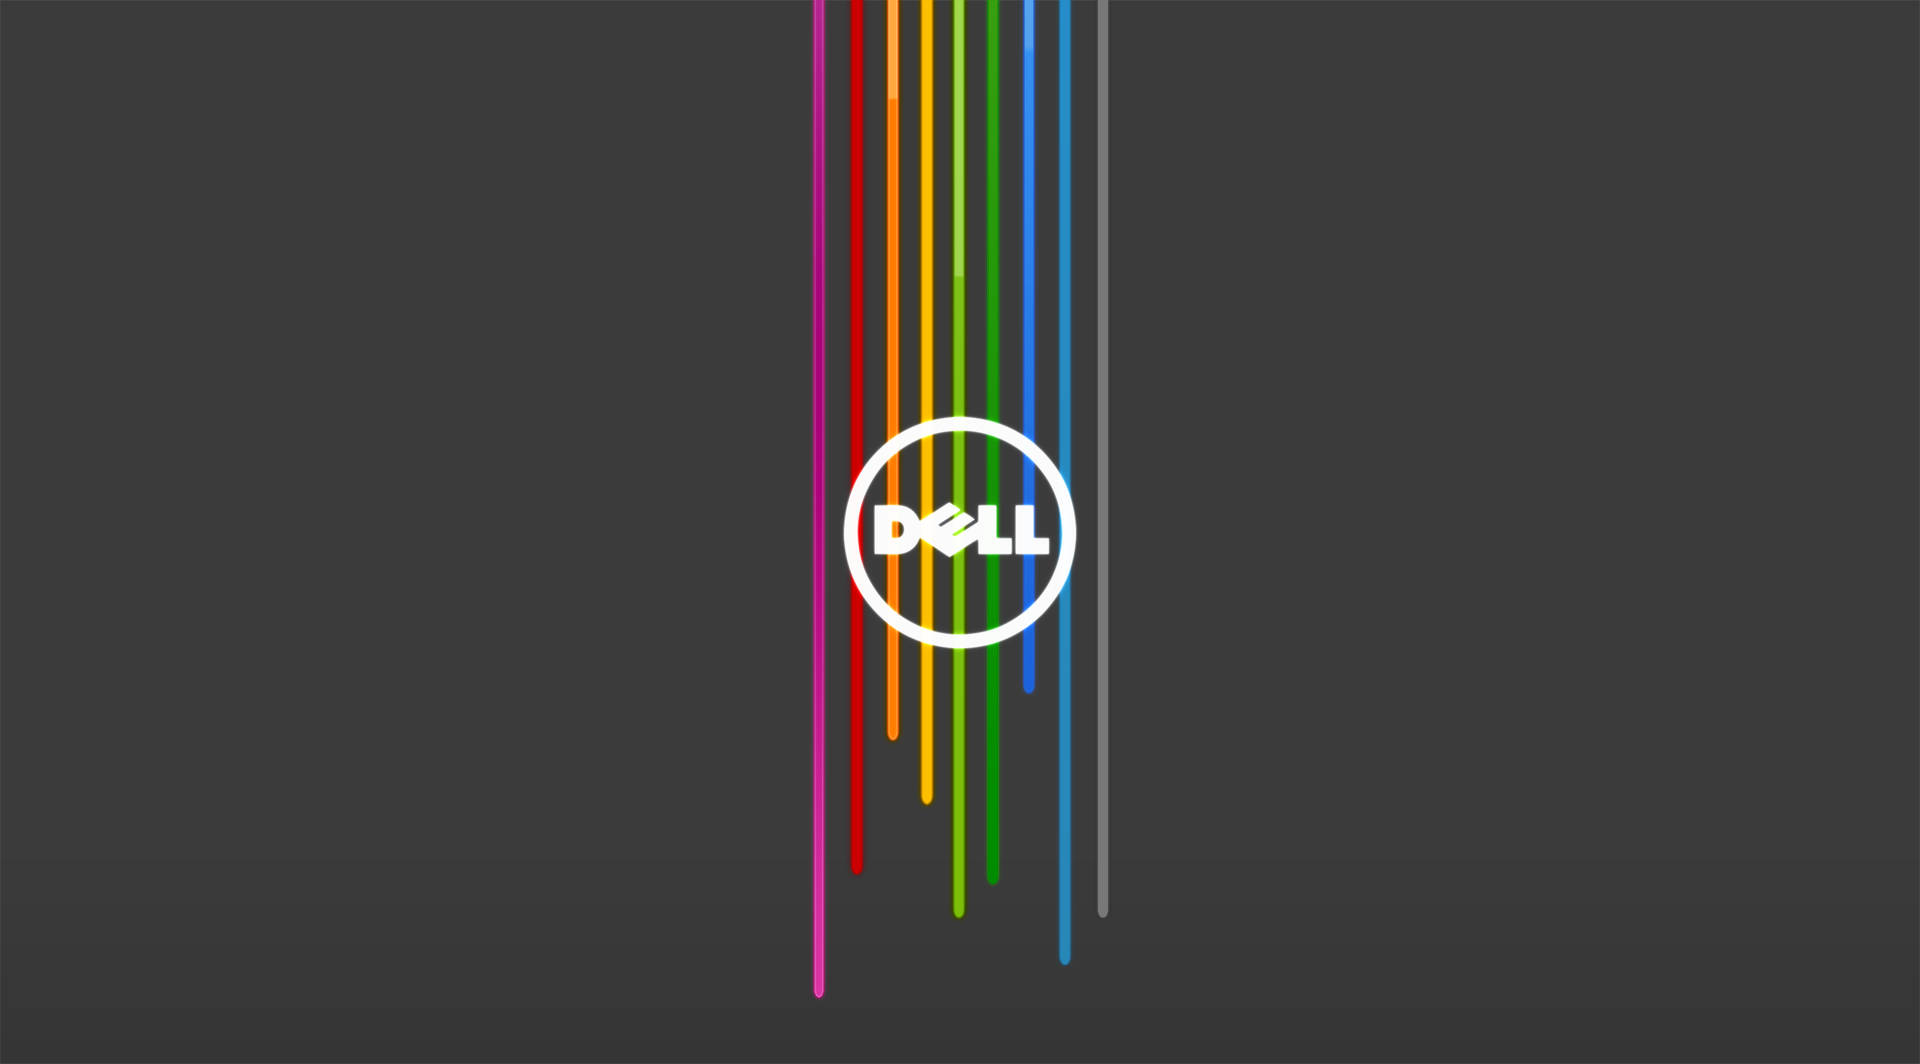 Dell 4k-logo På Gråt Wallpaper